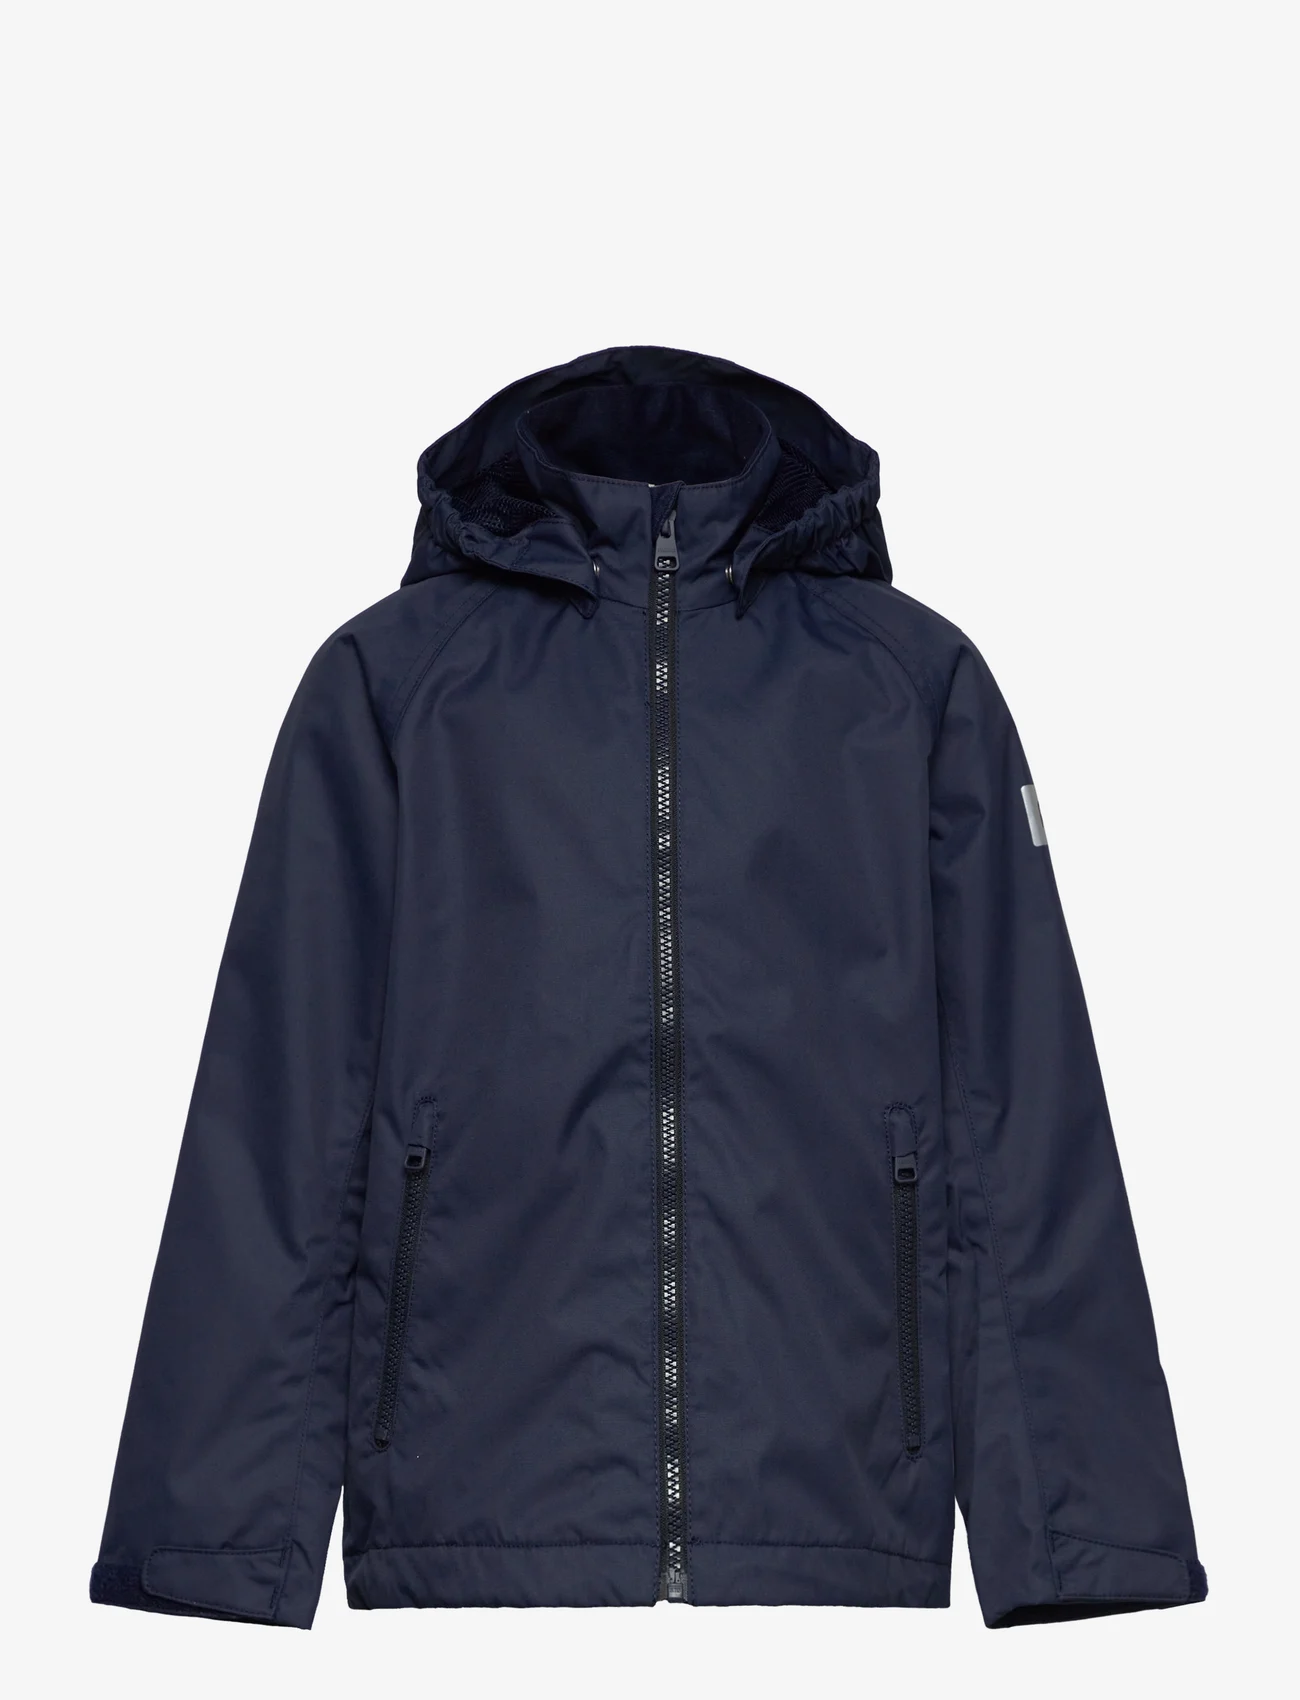 Reima - Reimatec jacket, Soutu - lichte jassen - navy - 0